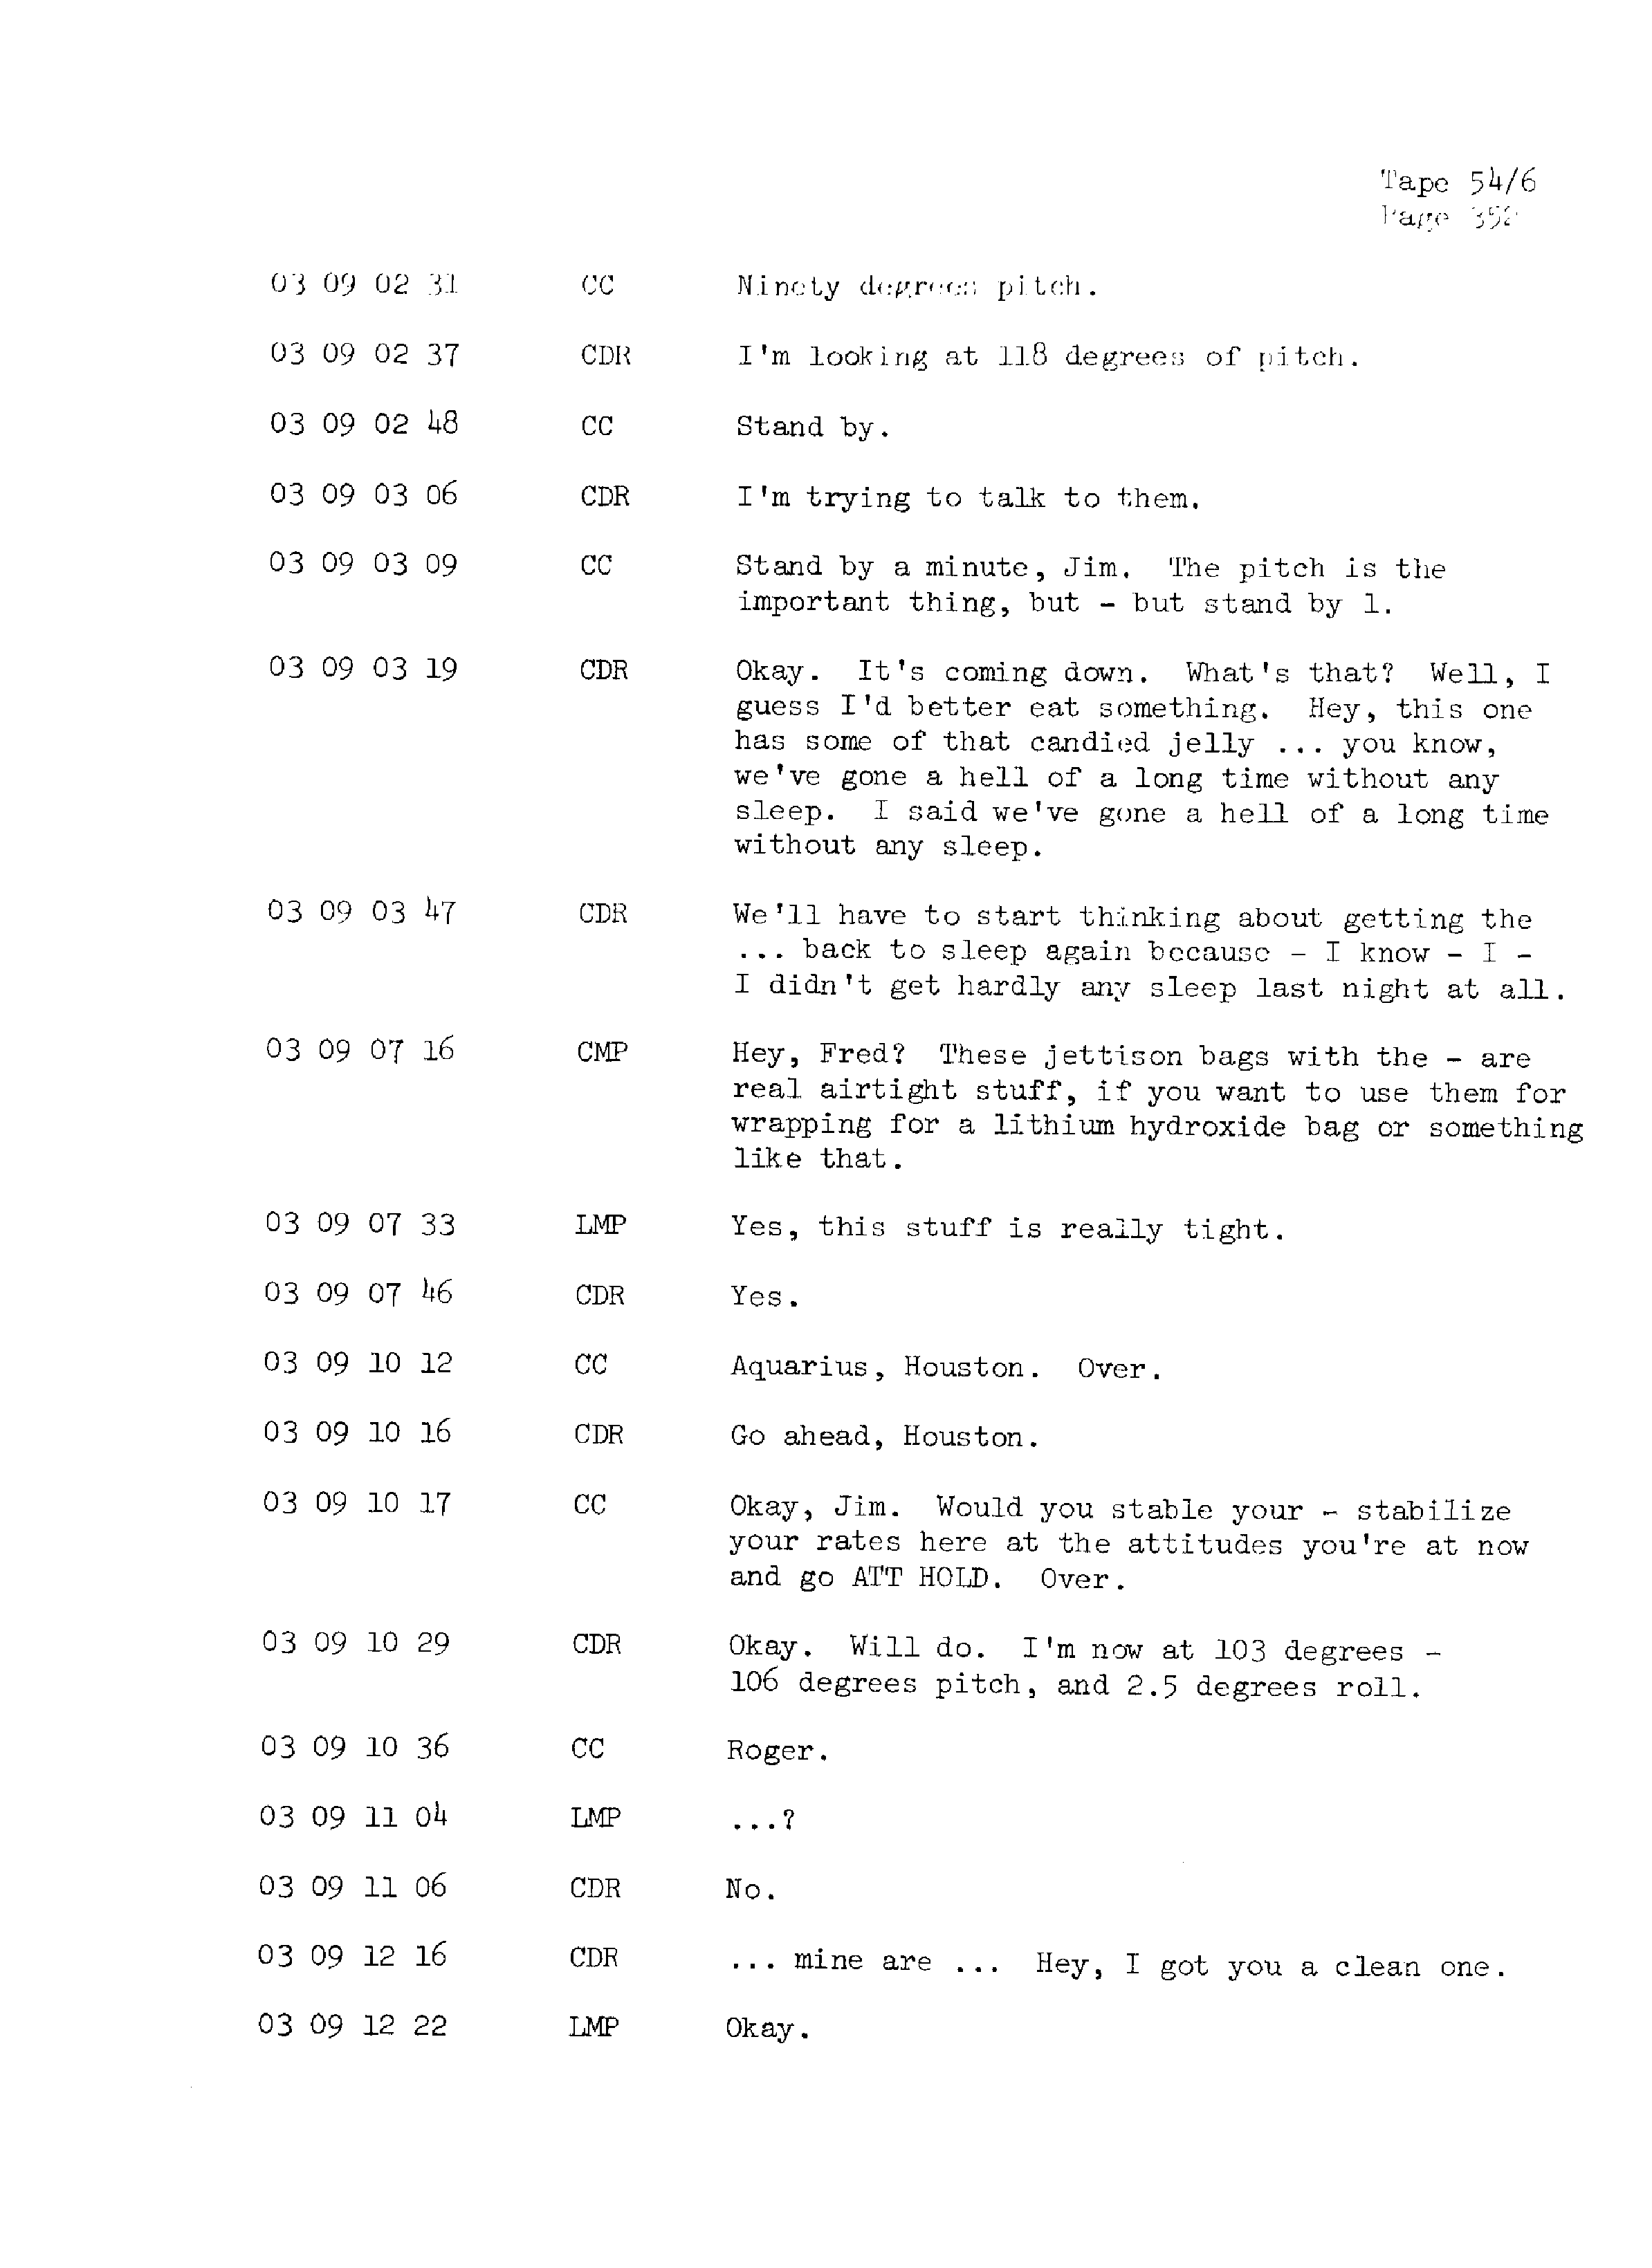 Page 359 of Apollo 13’s original transcript